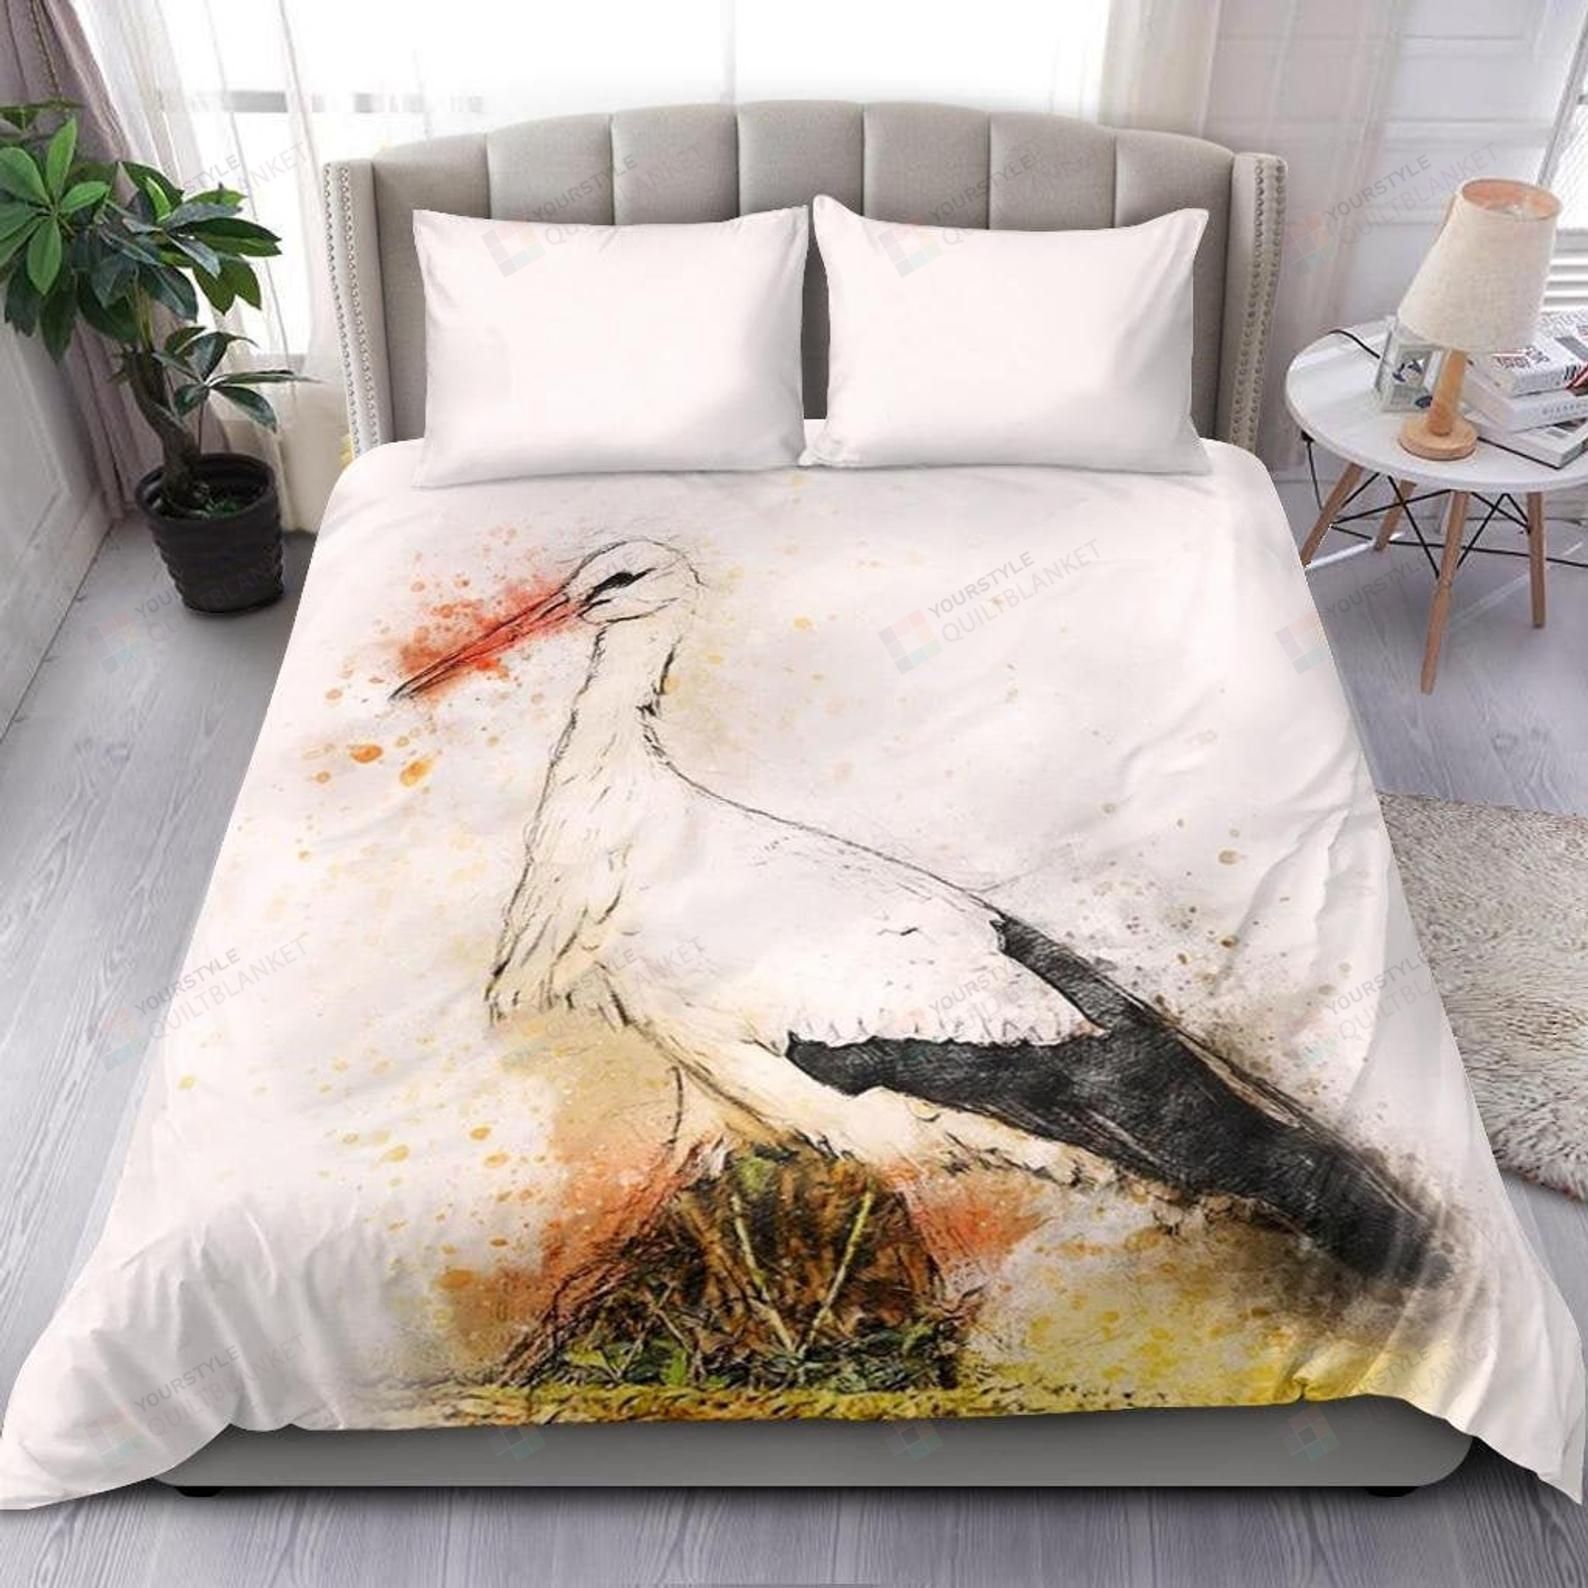 Stork Bedding Set Bed Sheets Spread Comforter Duvet Cover Bedding Sets